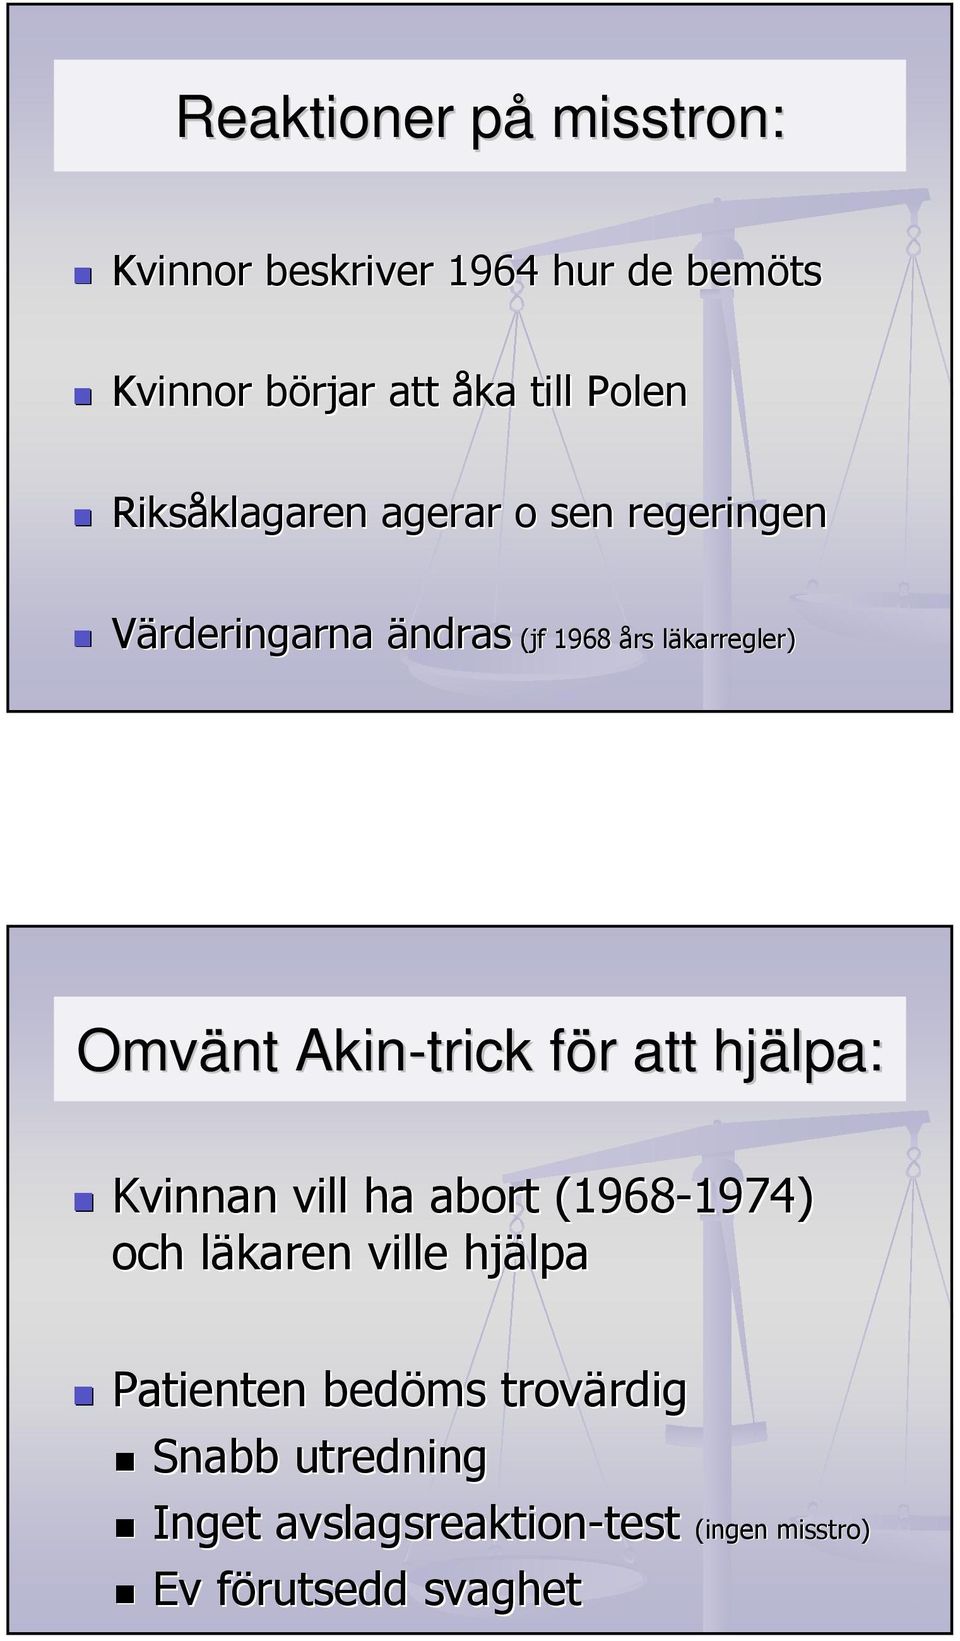 Akin-trick för f r att hjälpa: Kvinnan vill ha abort (1968-1974) 1974) och läkaren l ville hjälpa Patienten